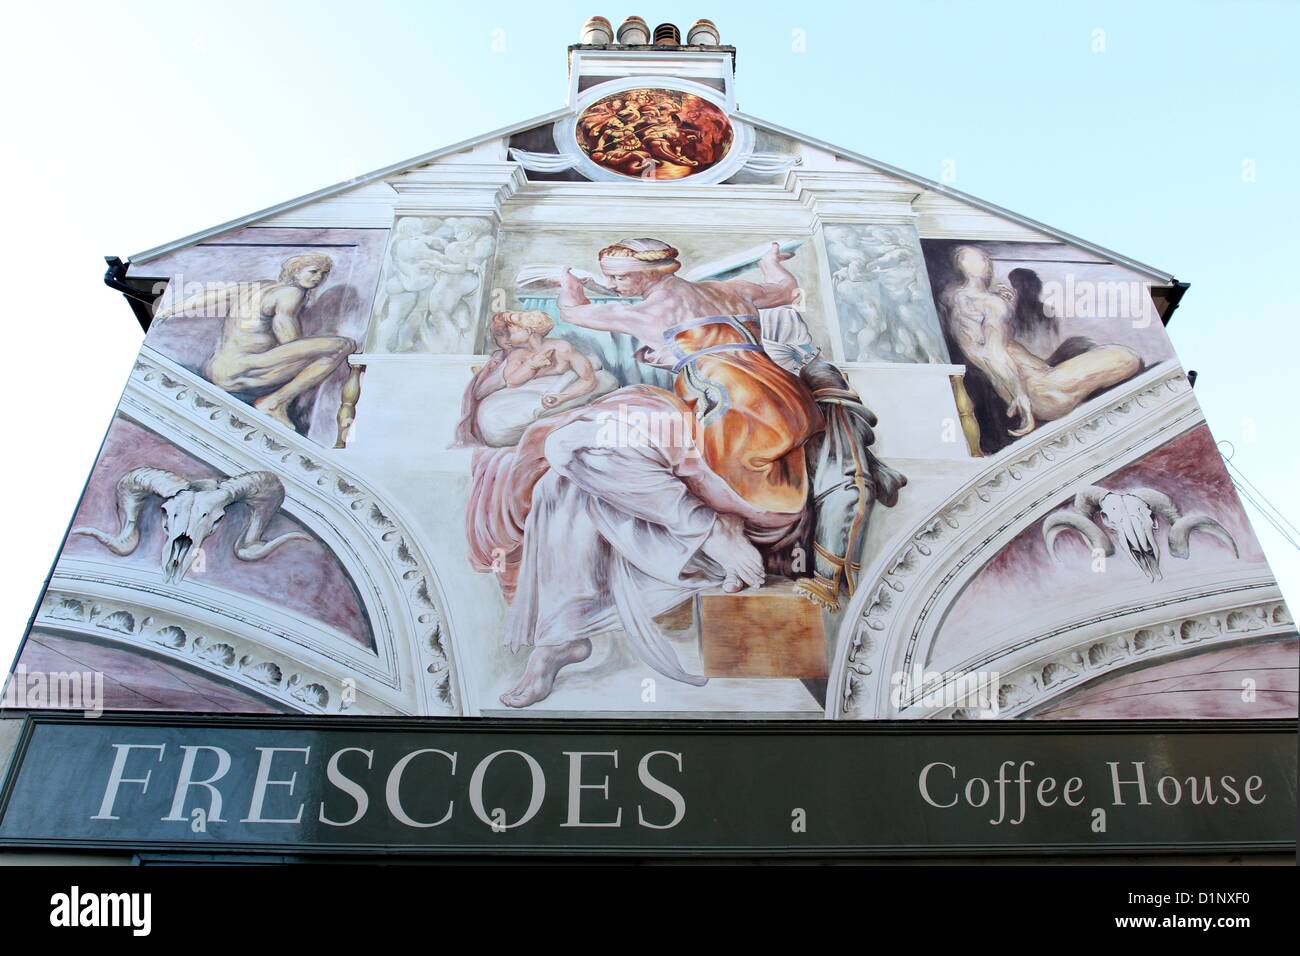 Bedford, UK. 1. Januar 2013. Michelangelos berühmte libysche Sibylle, normalerweise gesehen in der Sixtinischen Kapelle des Vatikans, hat jetzt eine ziemlich große Kopie - auf der Seite ein Café in Bedford.  Kevin Kavanagh, Besitzer des "Fresken" in der Stadt Mill Street beauftragte lokale Künstler Iain Carstairs, 115 qm Fresko Kunstwerk Ikone aus dem 16. Jahrhundert zu schaffen, kostet ca. £30.000 abgeschlossen hat.  Iain dauerte zwei Monate das beeindruckende Wandgemälde, die malte er vom Gerüst rund um das Café. Stockfoto